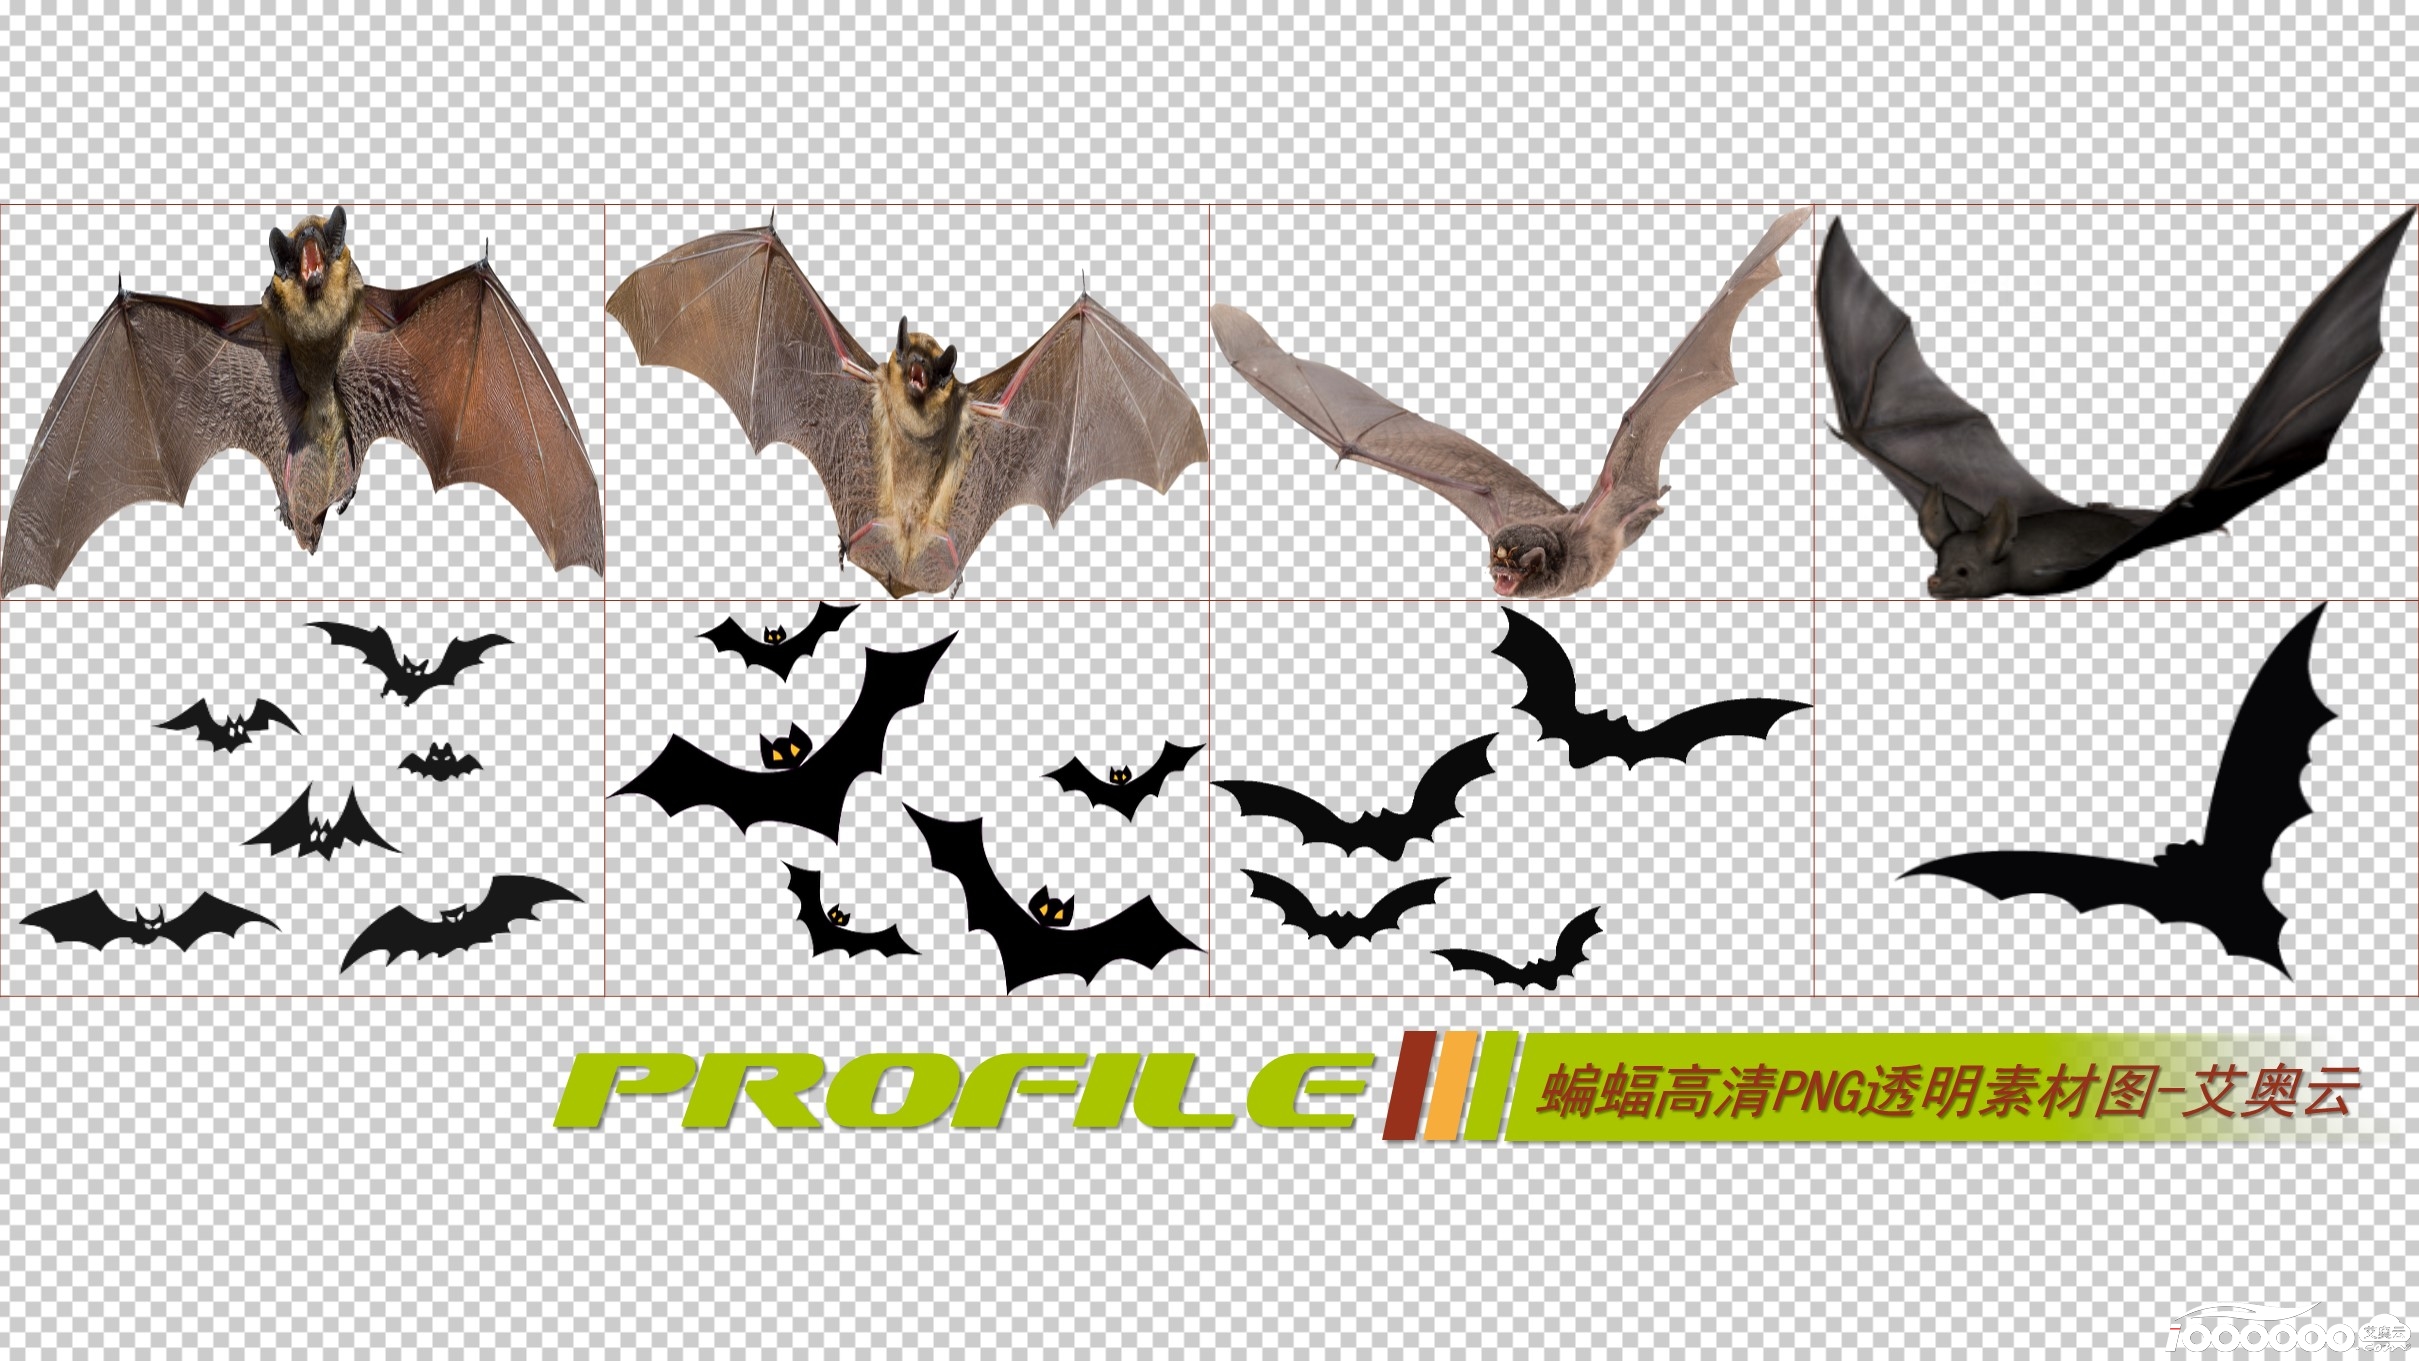 蝙蝠高清png透明图片图形素材打包免费下载 (1).JPG